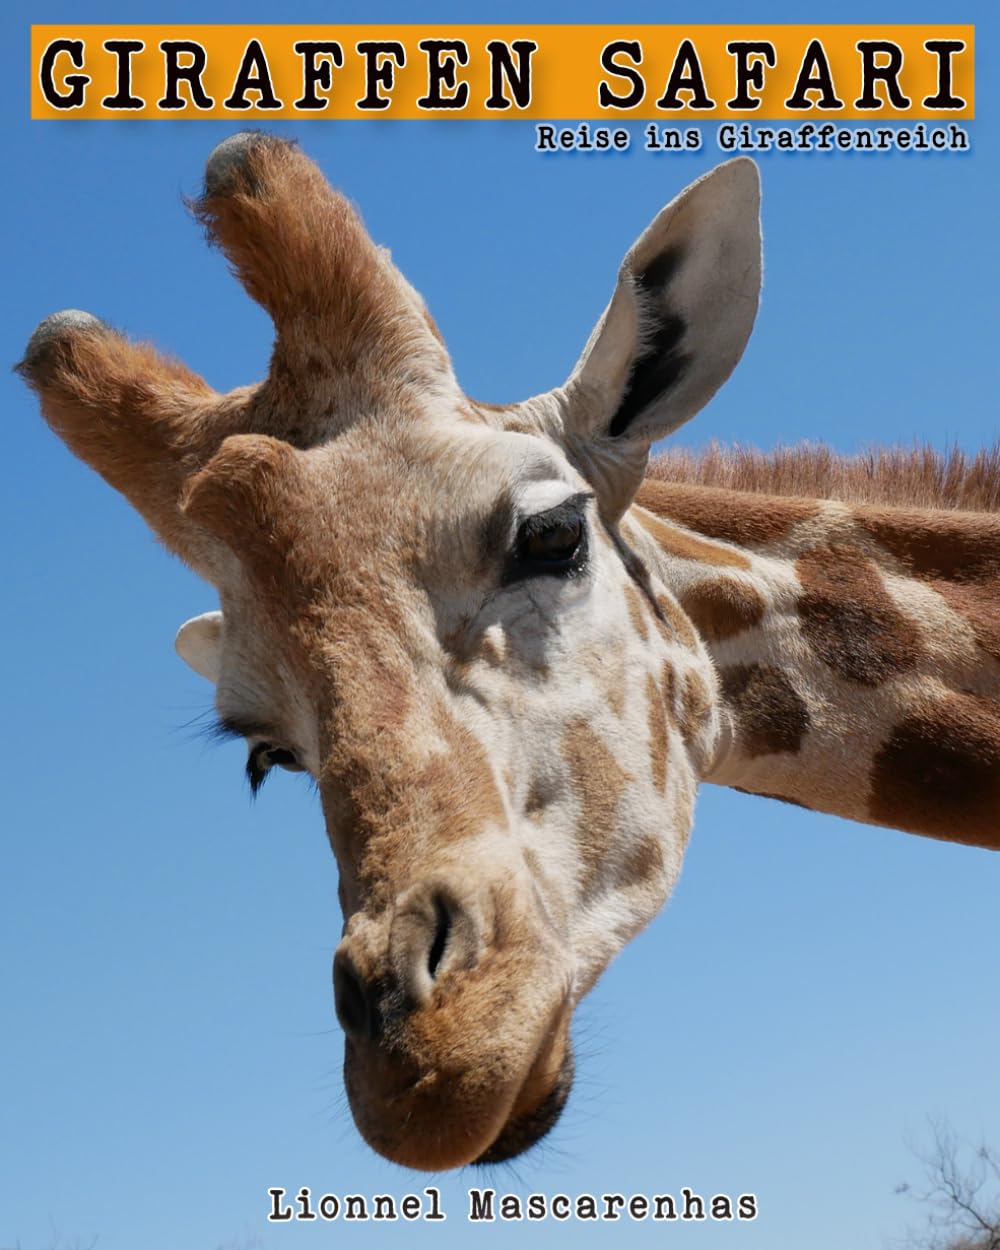 Giraffen Safari: Reise ins Giraffenreich – Ein Giraffen-Bilderbuch für Kinder